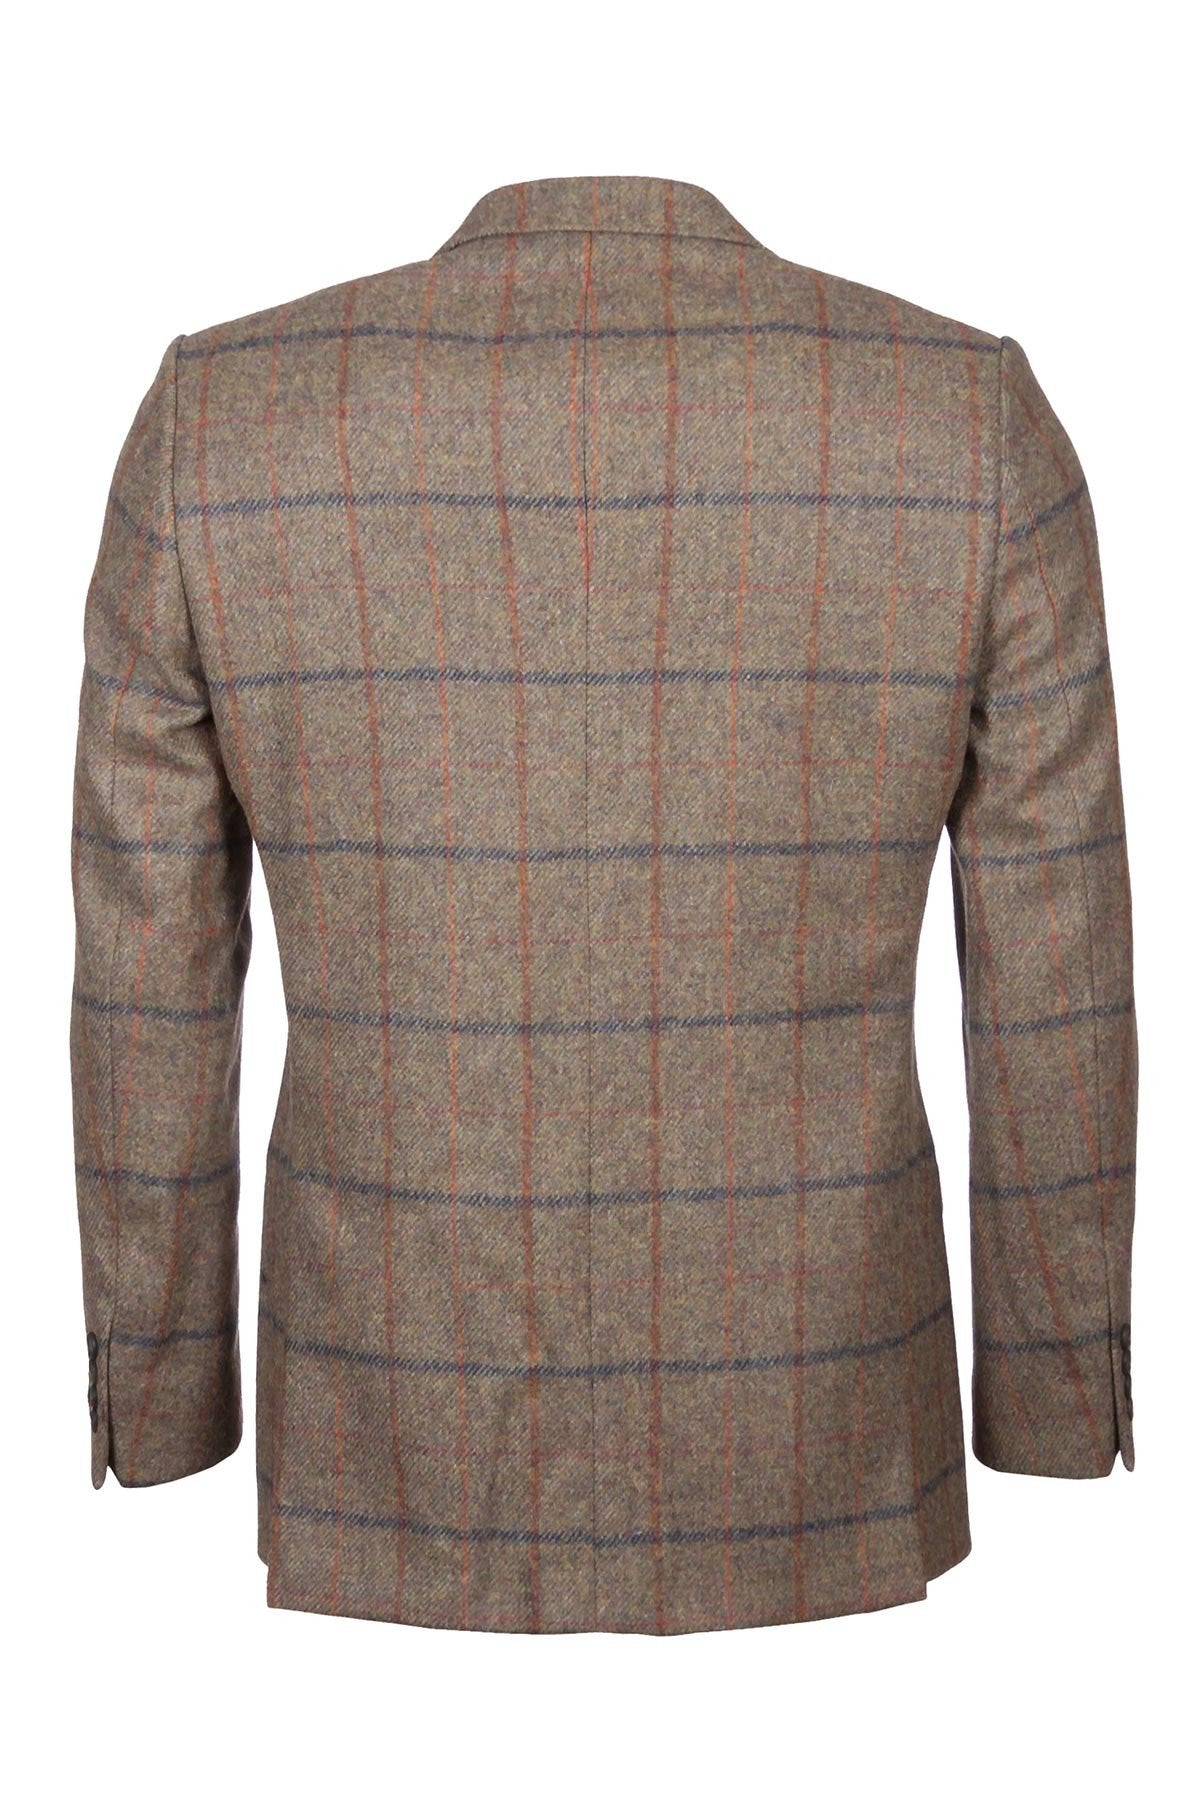 Mens Casual Tweed Blazer UK | Mens Tweed Jacket | Rydale